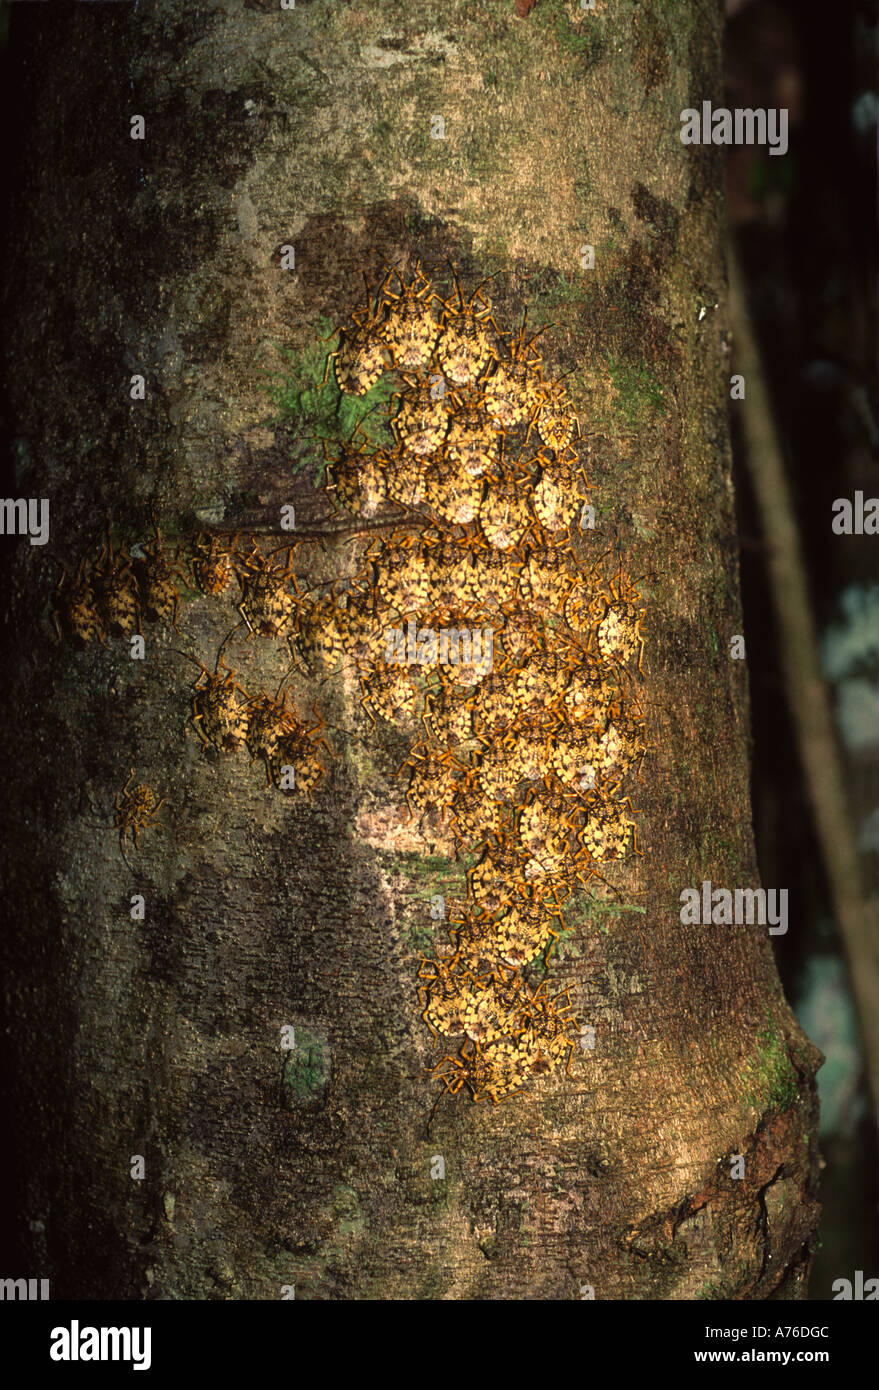 Groupe d'insectes regroupés sur le côté d'un arbre, forêt tropicale, bassin amazonien Banque D'Images